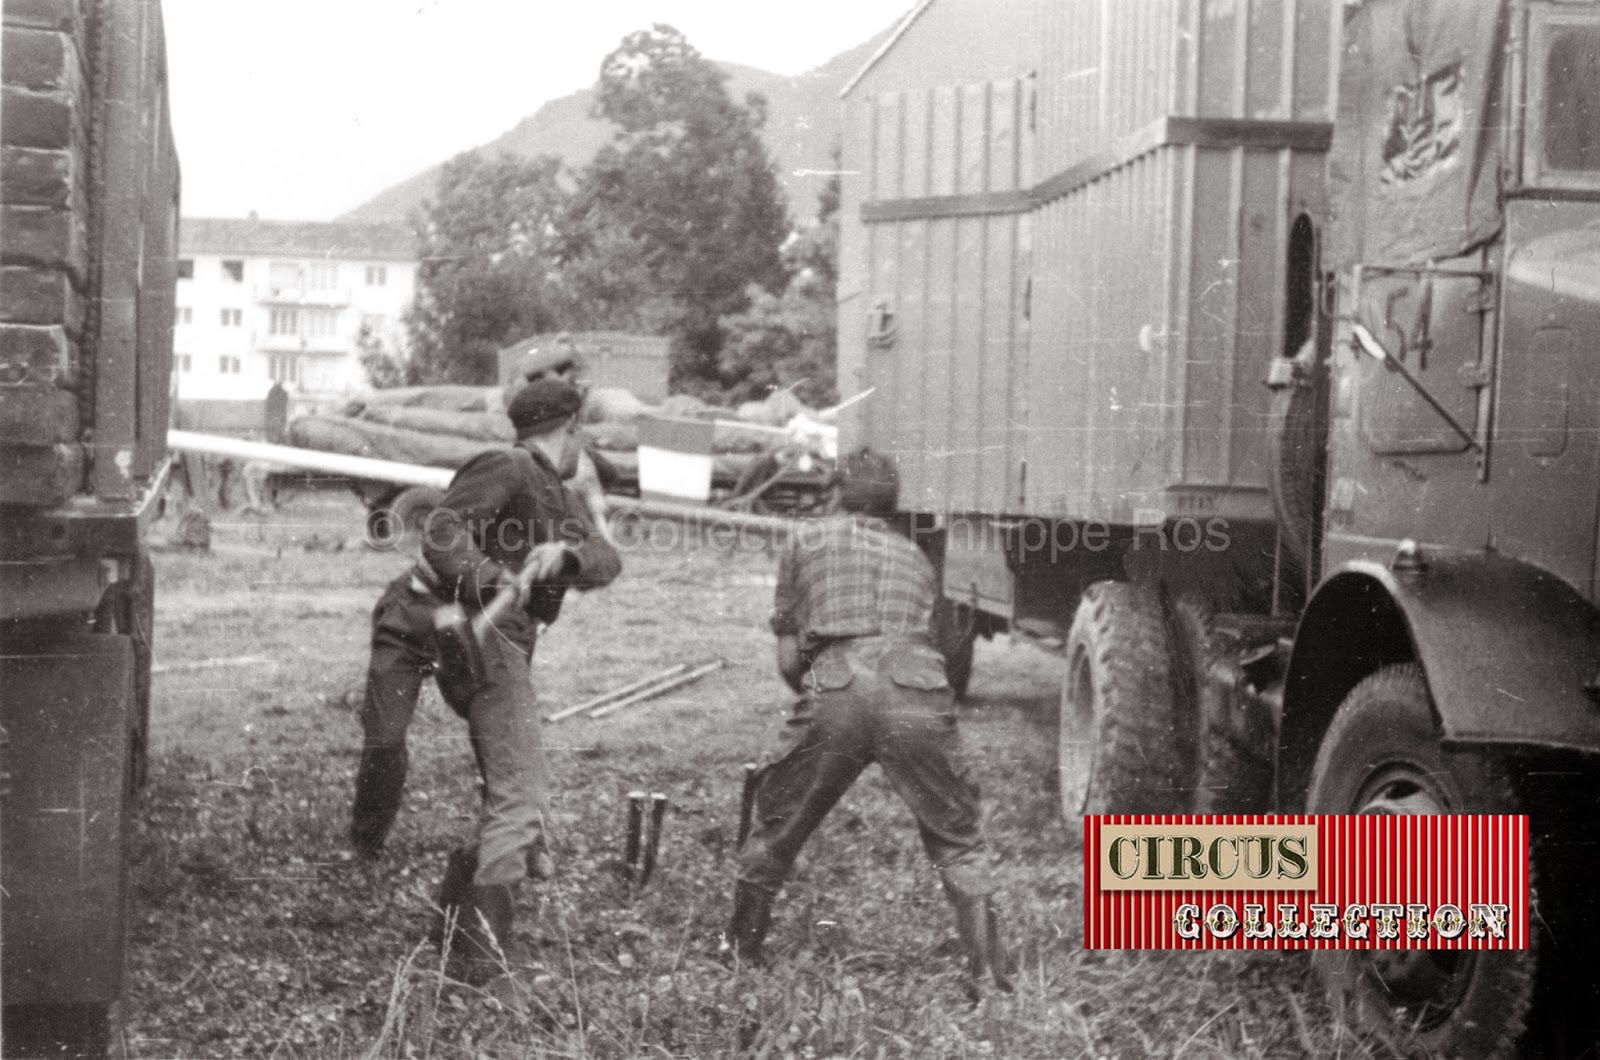 entre deux camions, les ouvriers du cirque plantent des pinces pour amarrer le chapiteau du cirque